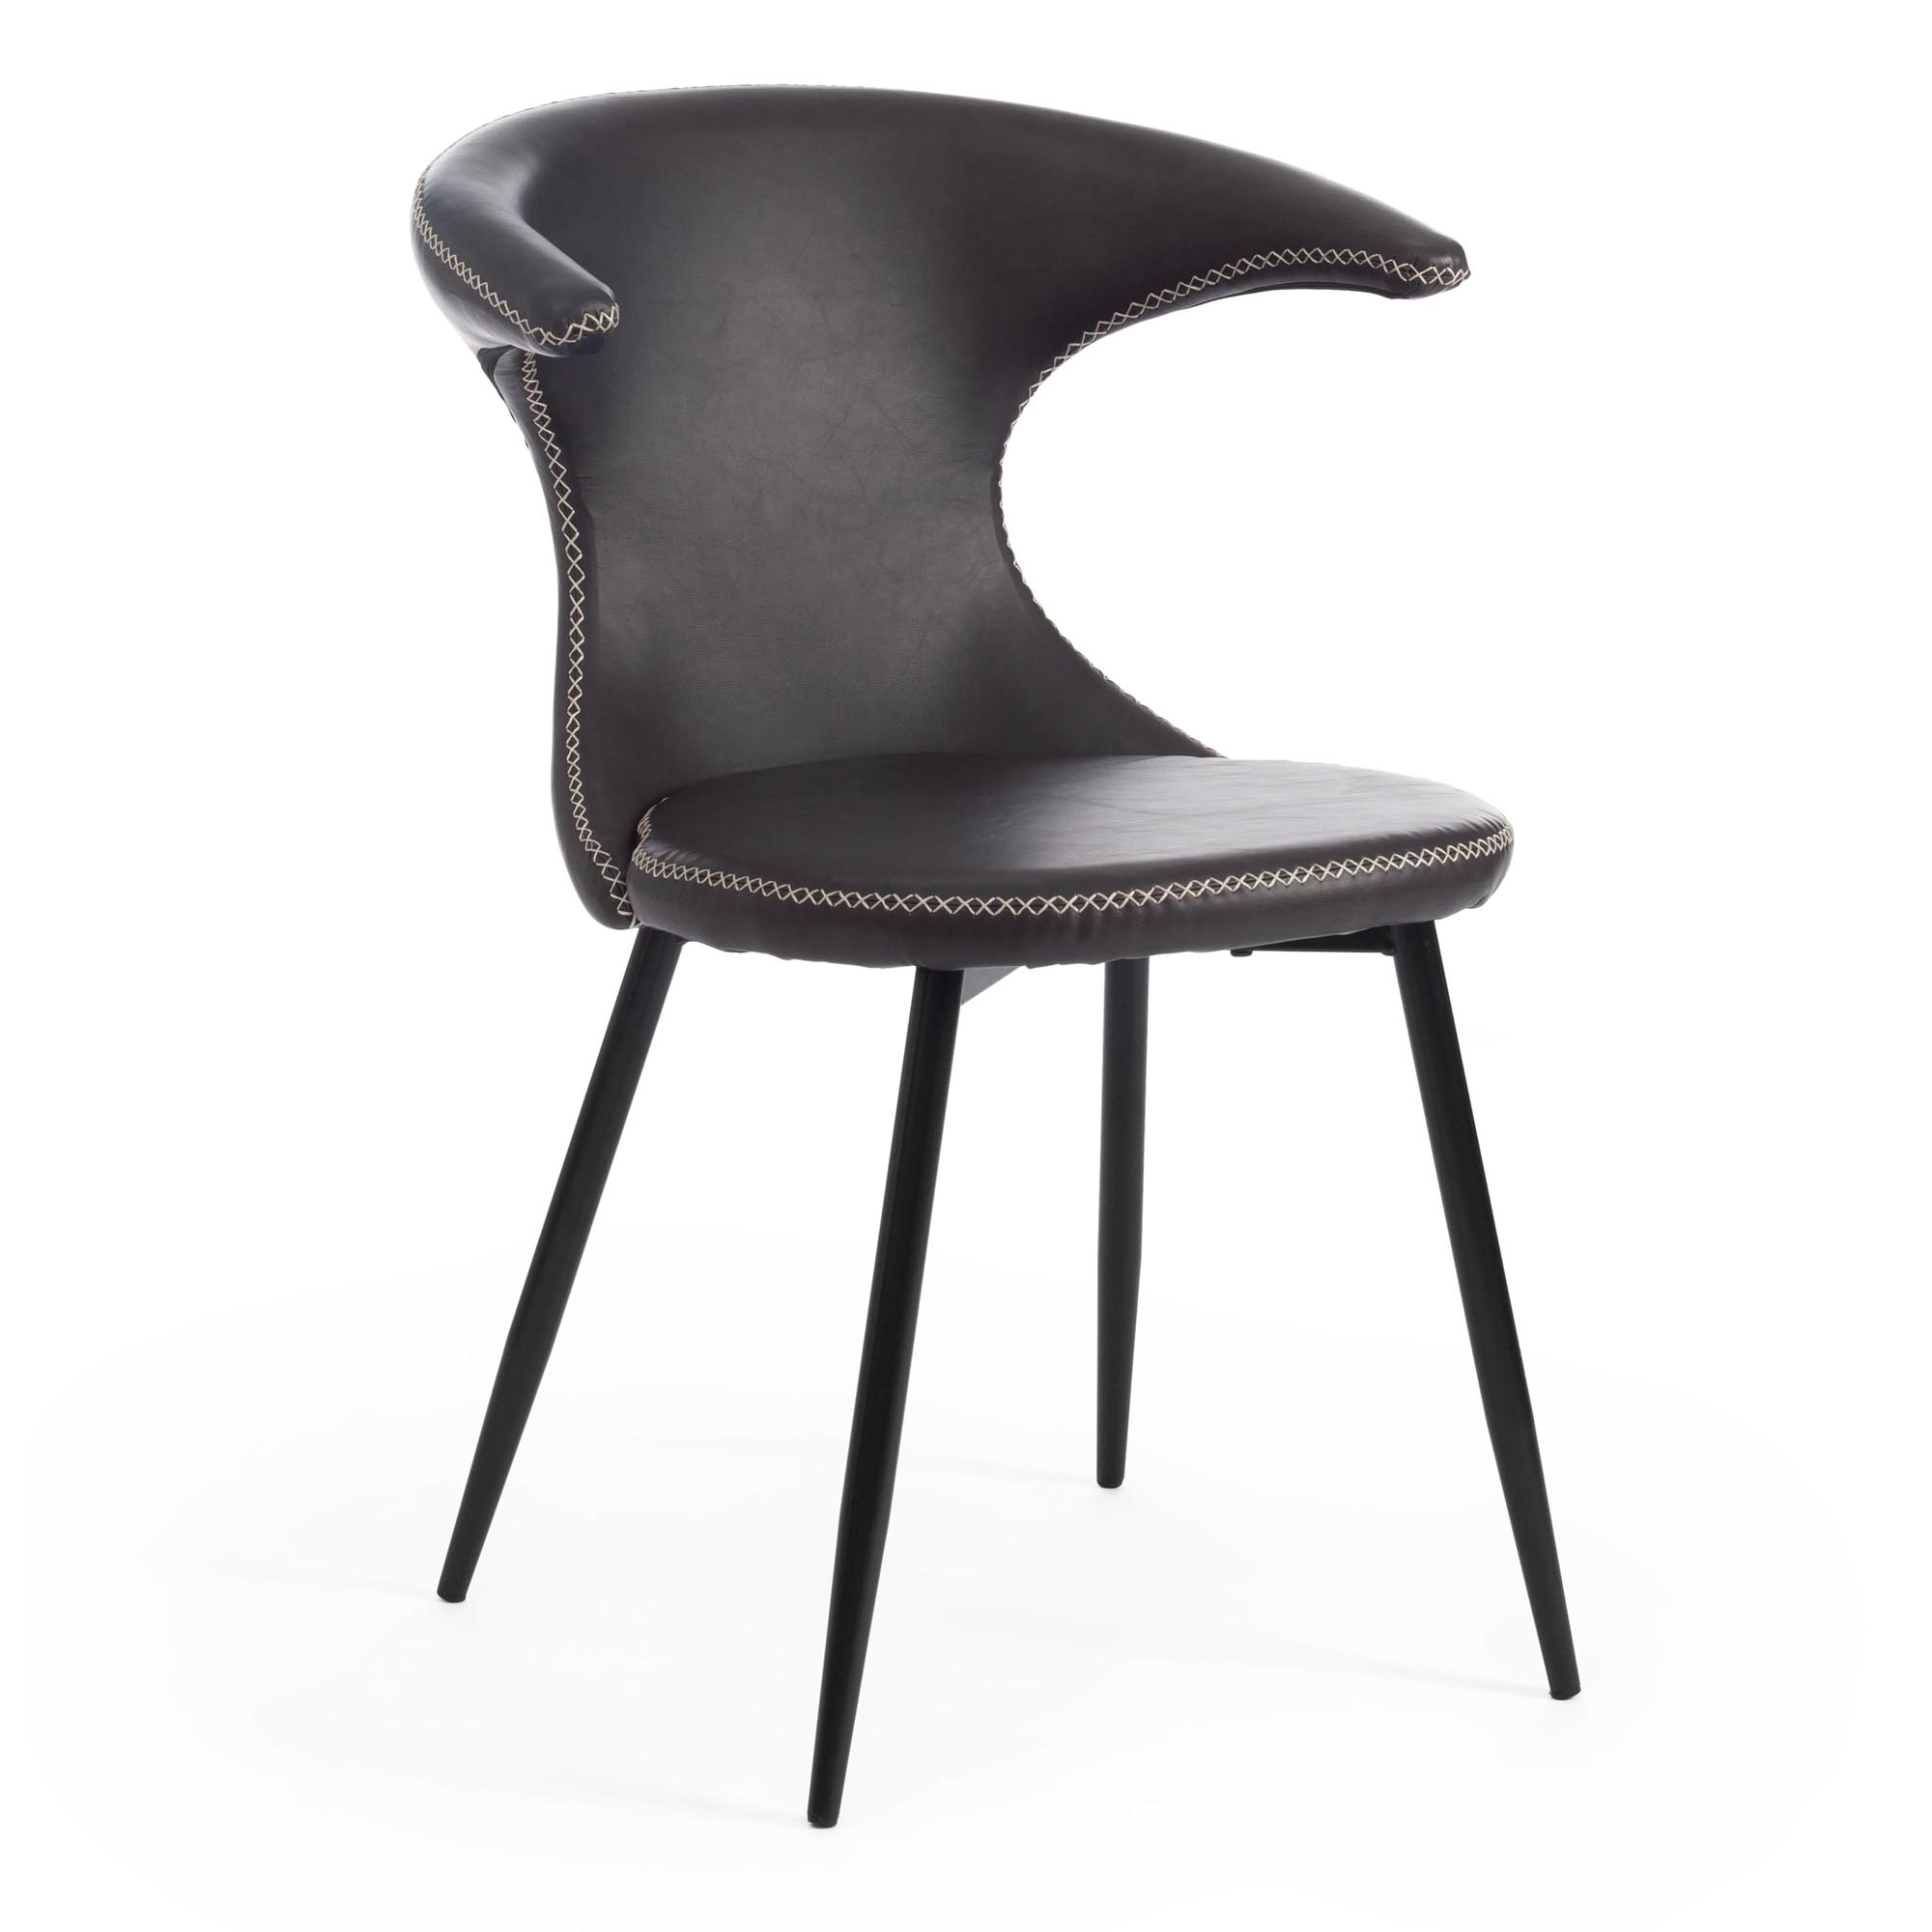 стул пластиковый усиленный стекловолокном для дома и спальни кабинета гостиной комбинированный стол и стул маленький низкий стул для ры Стул TC Flair 60x56x78 см серый/черный